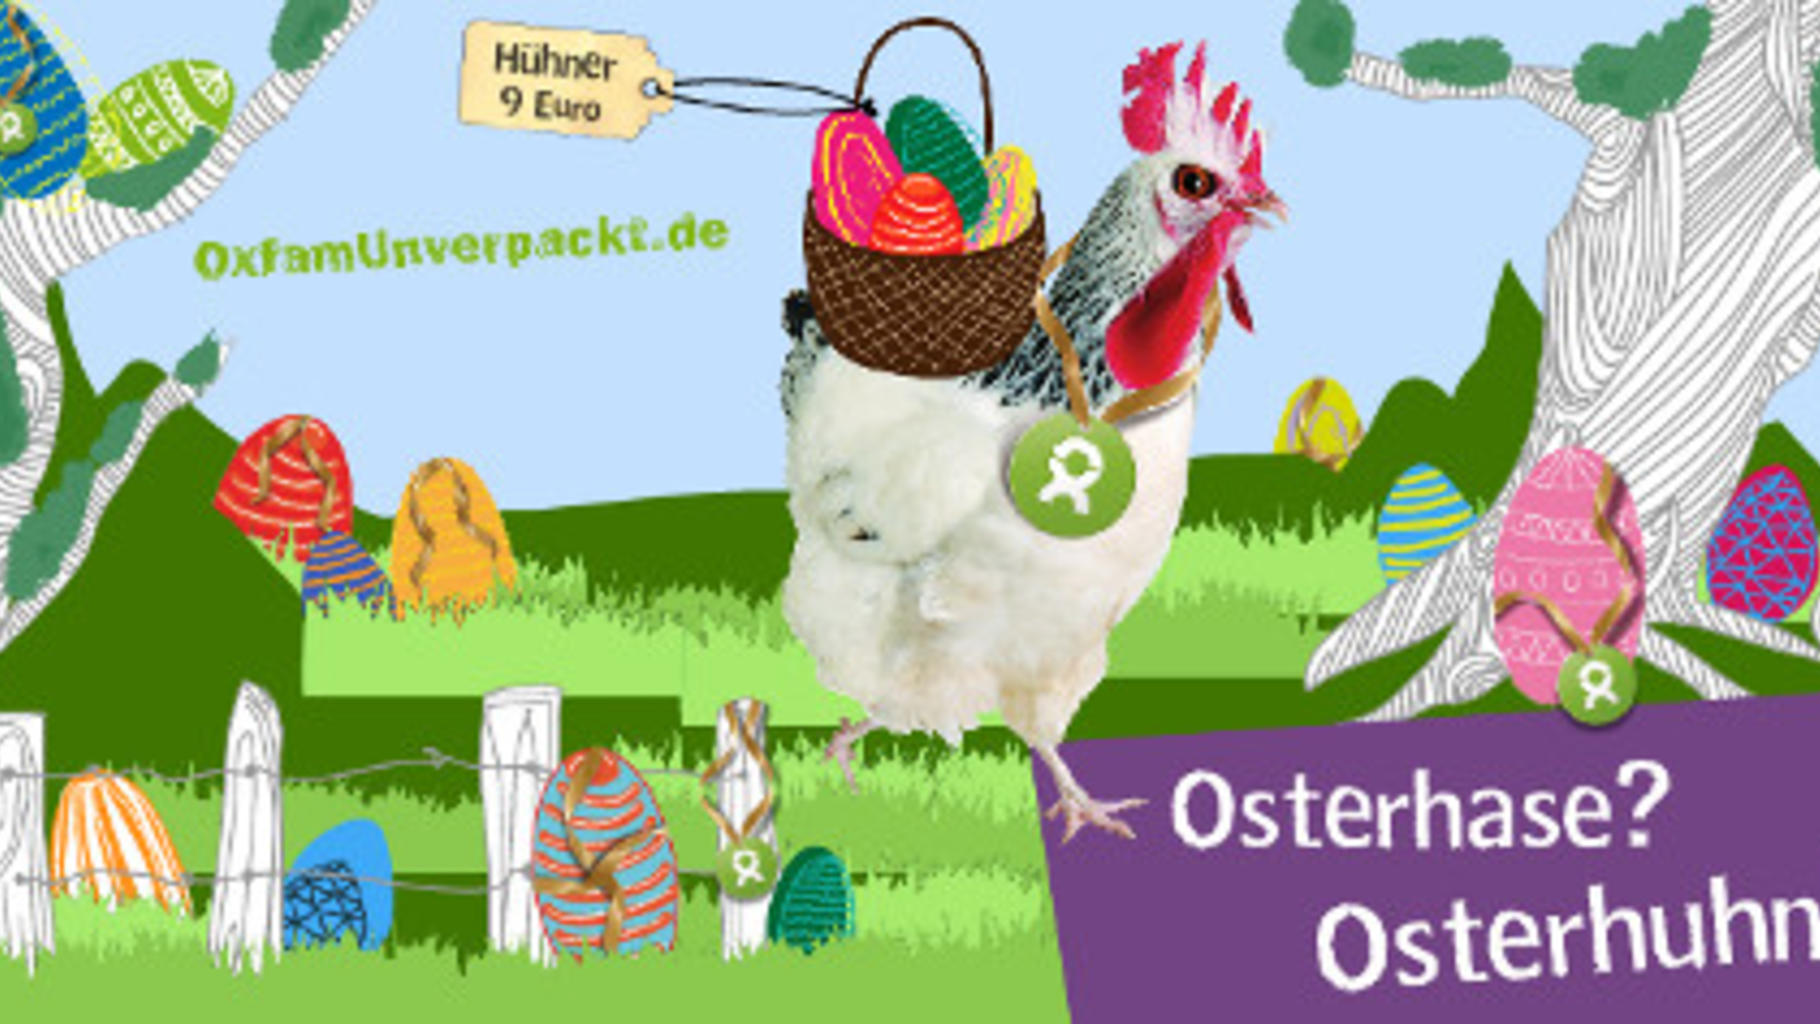 Osterhase? Osterhuhn! Hühner für 9 Euro auf oxfamunverpackt.de